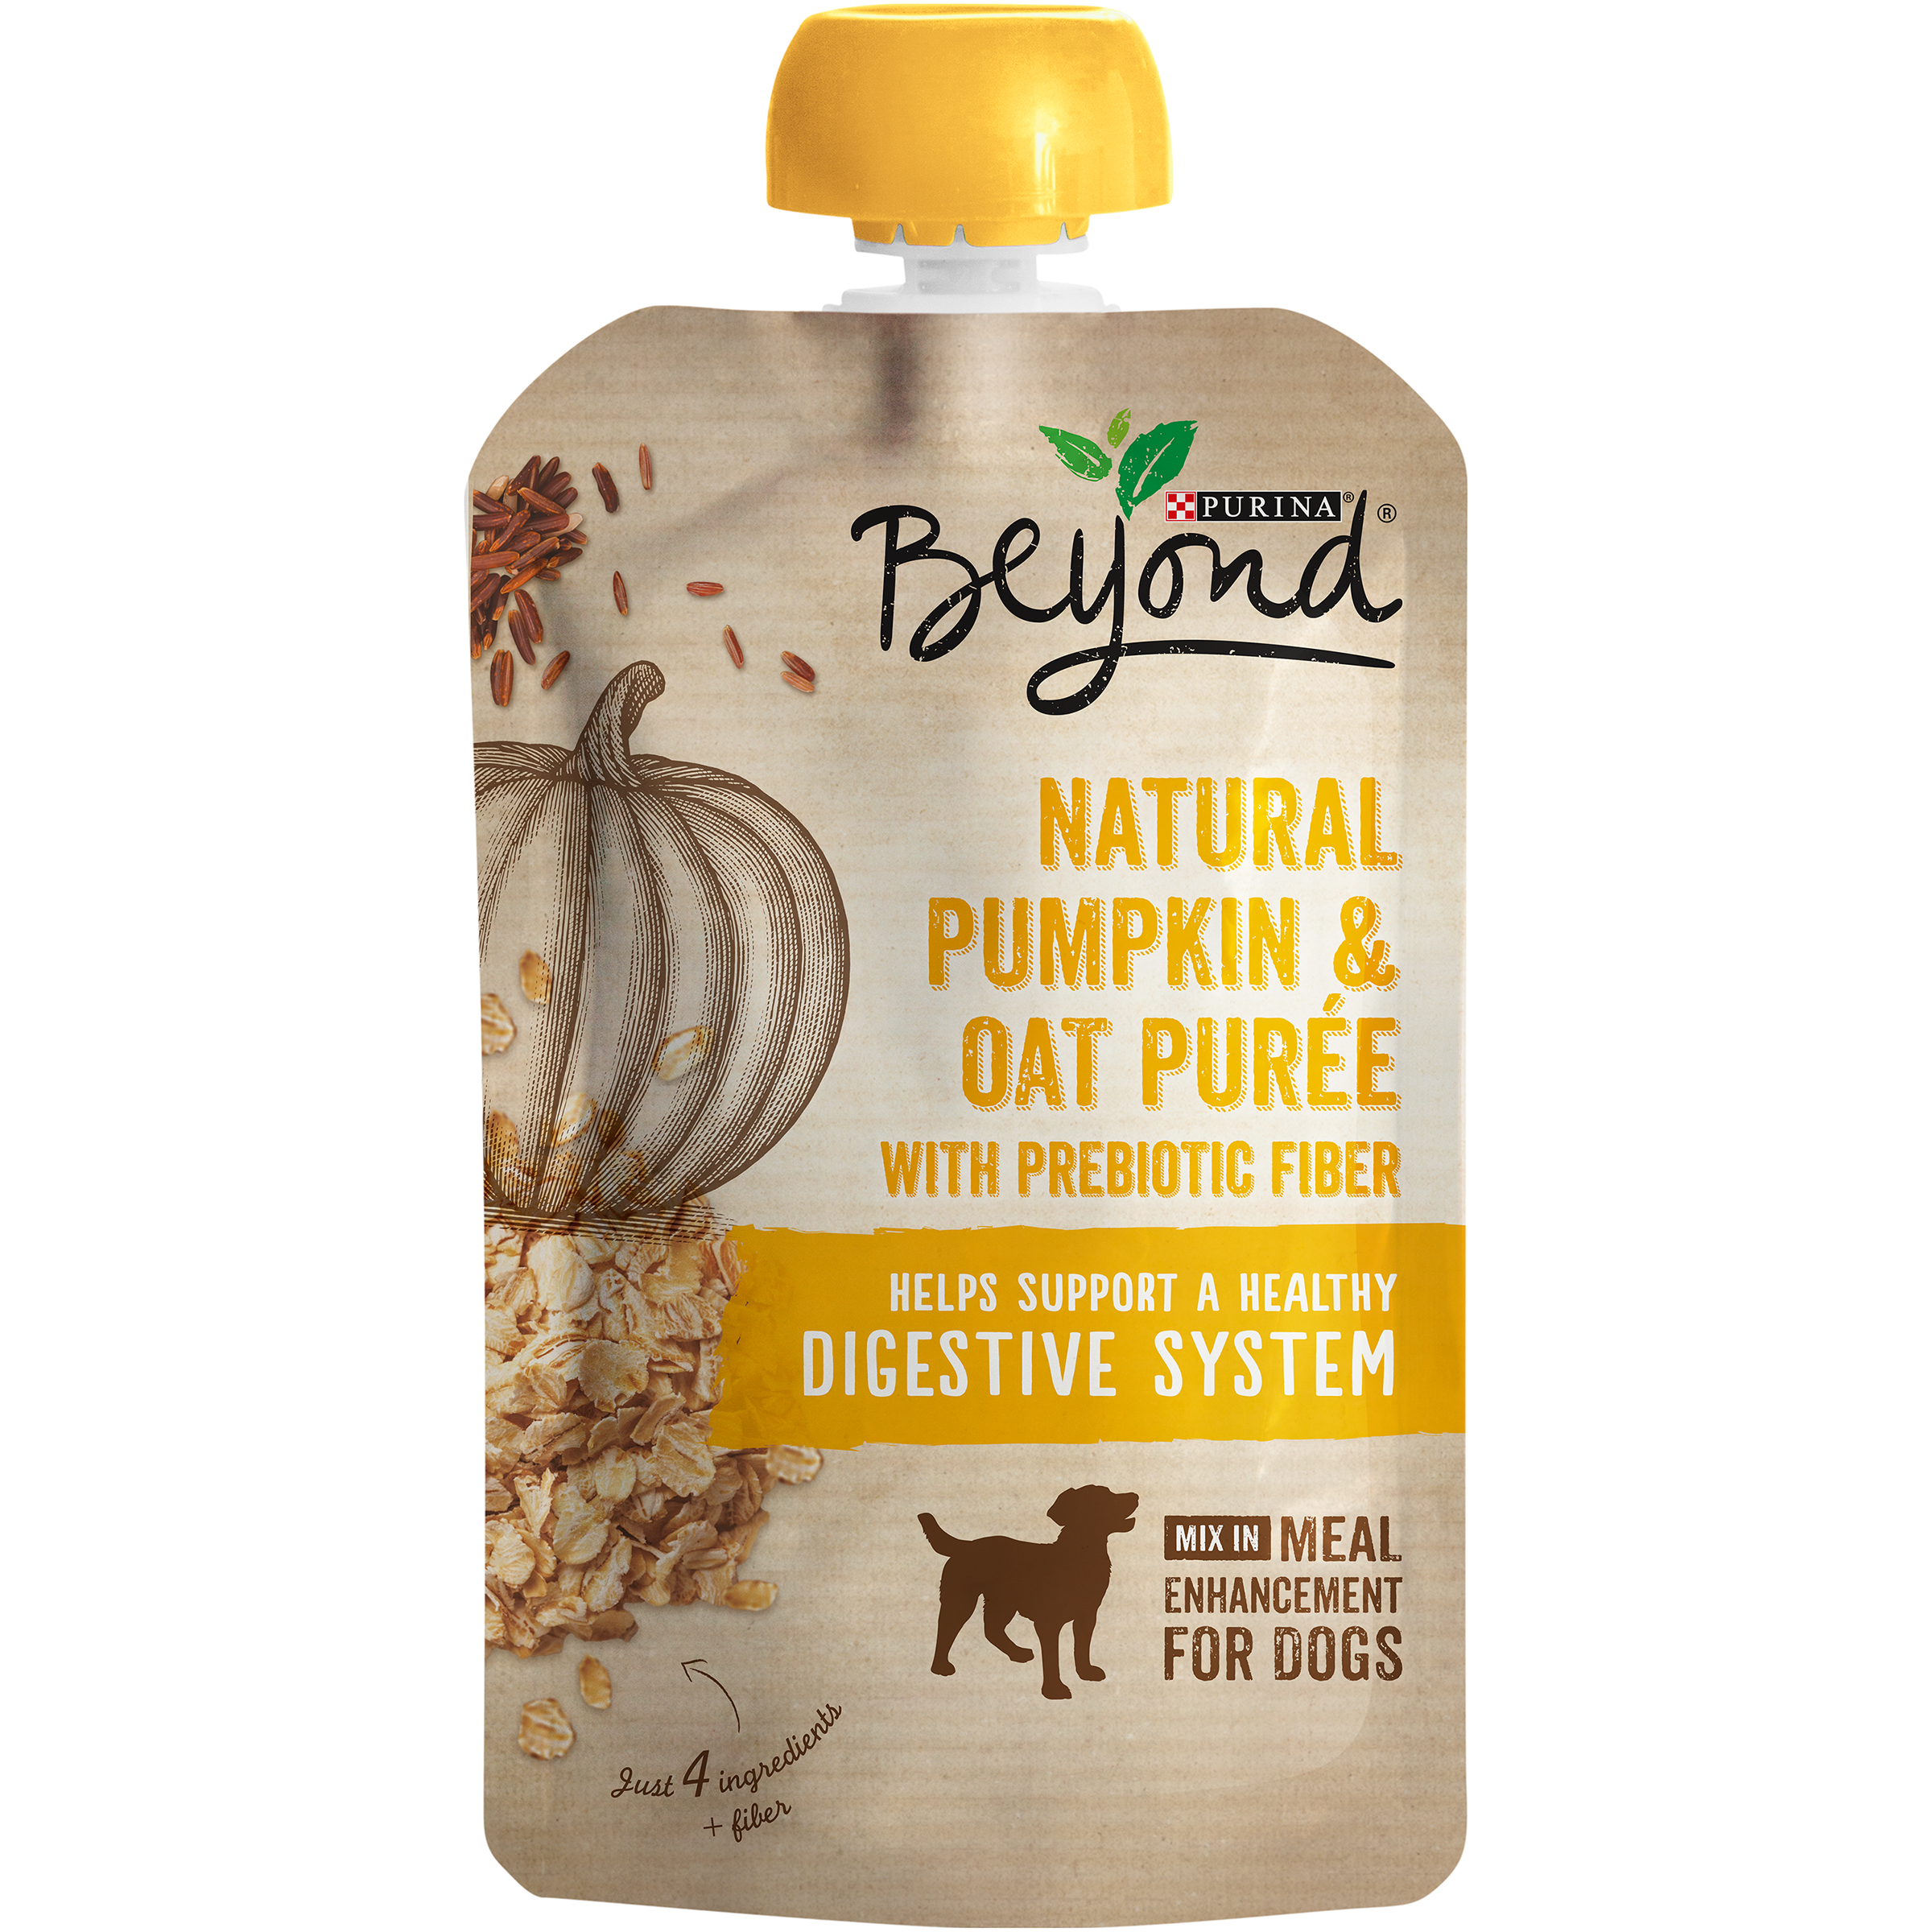 Purina Beyond Natural Pumpkin & Oat Puree Meal Enhancement - Pet